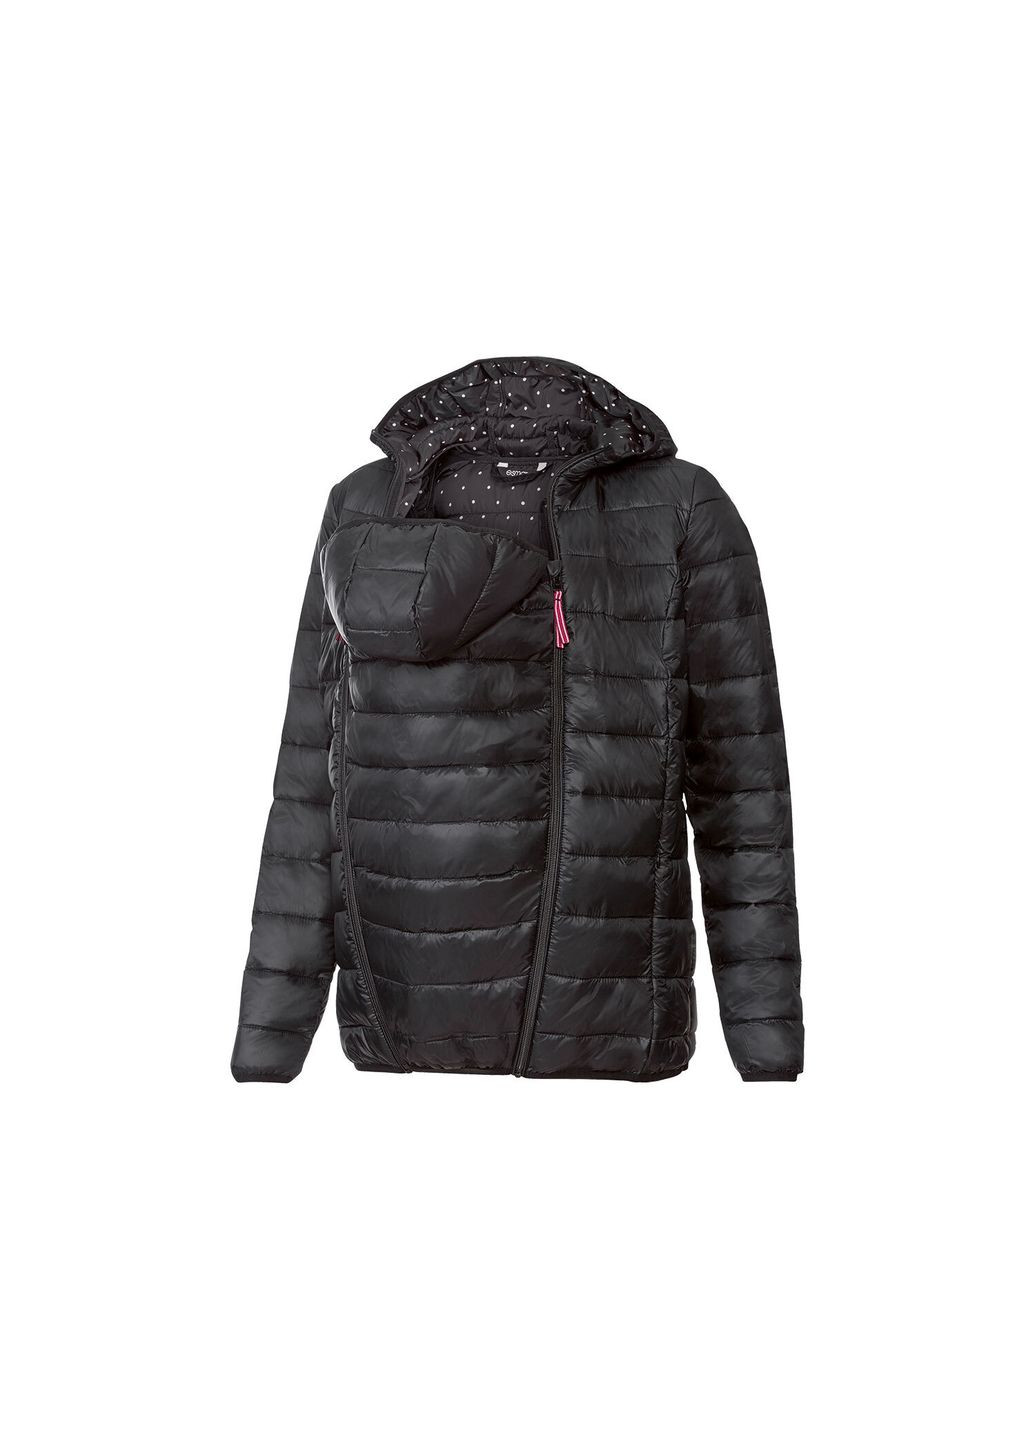 Черная демисезонная куртка демисезонная для беременных и слингокуртка 3 в 1 для женщины bionic-finish® eco 357573 34(xs) куртка-пиджак Esmara